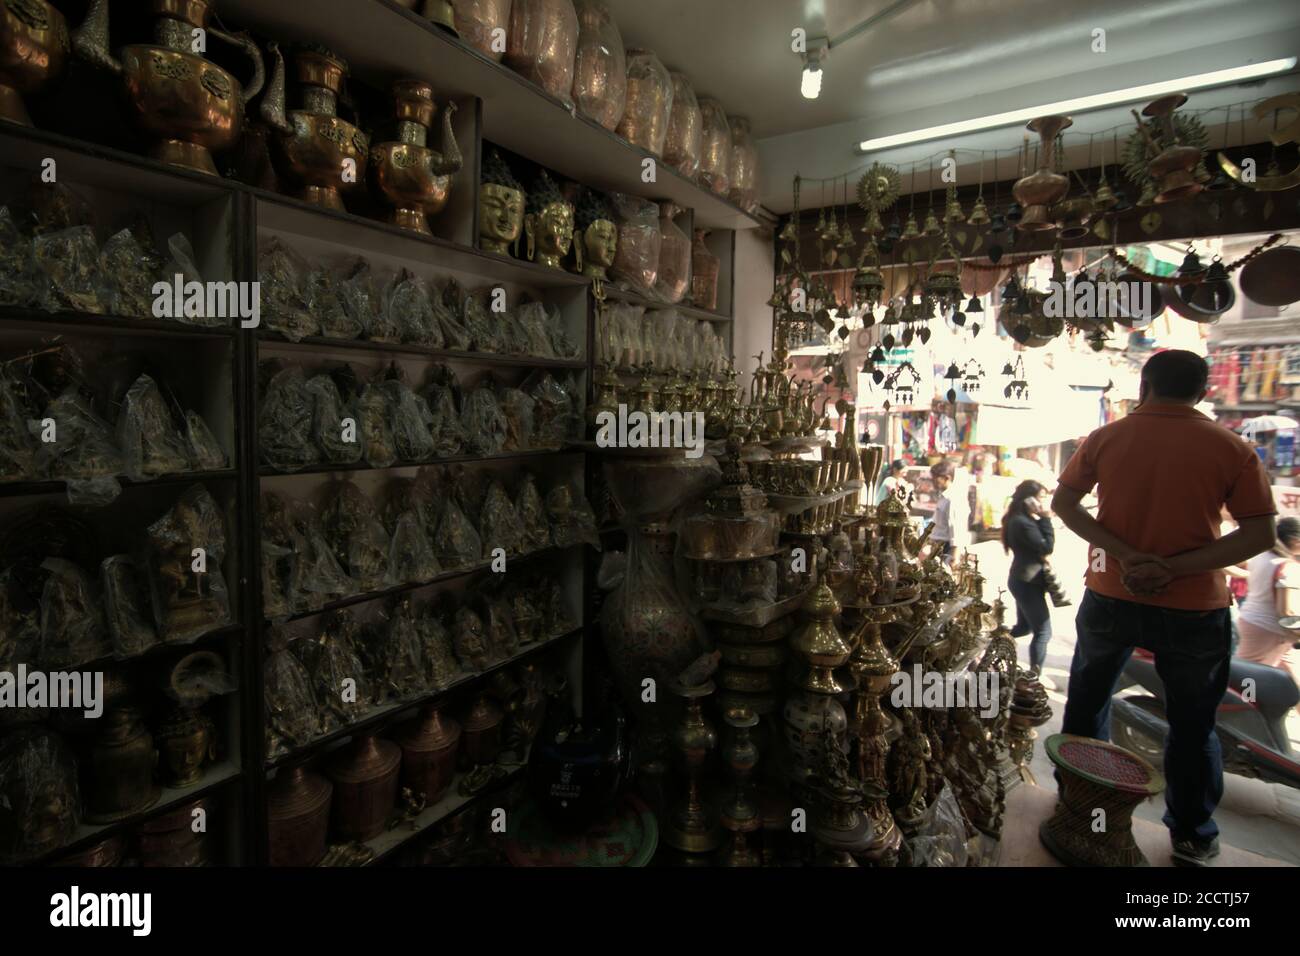 Un acheteur attend des clients dans une boutique d'ornement et de souvenirs de rue dans la région de Thamel, Katmandou, Népal. Banque D'Images